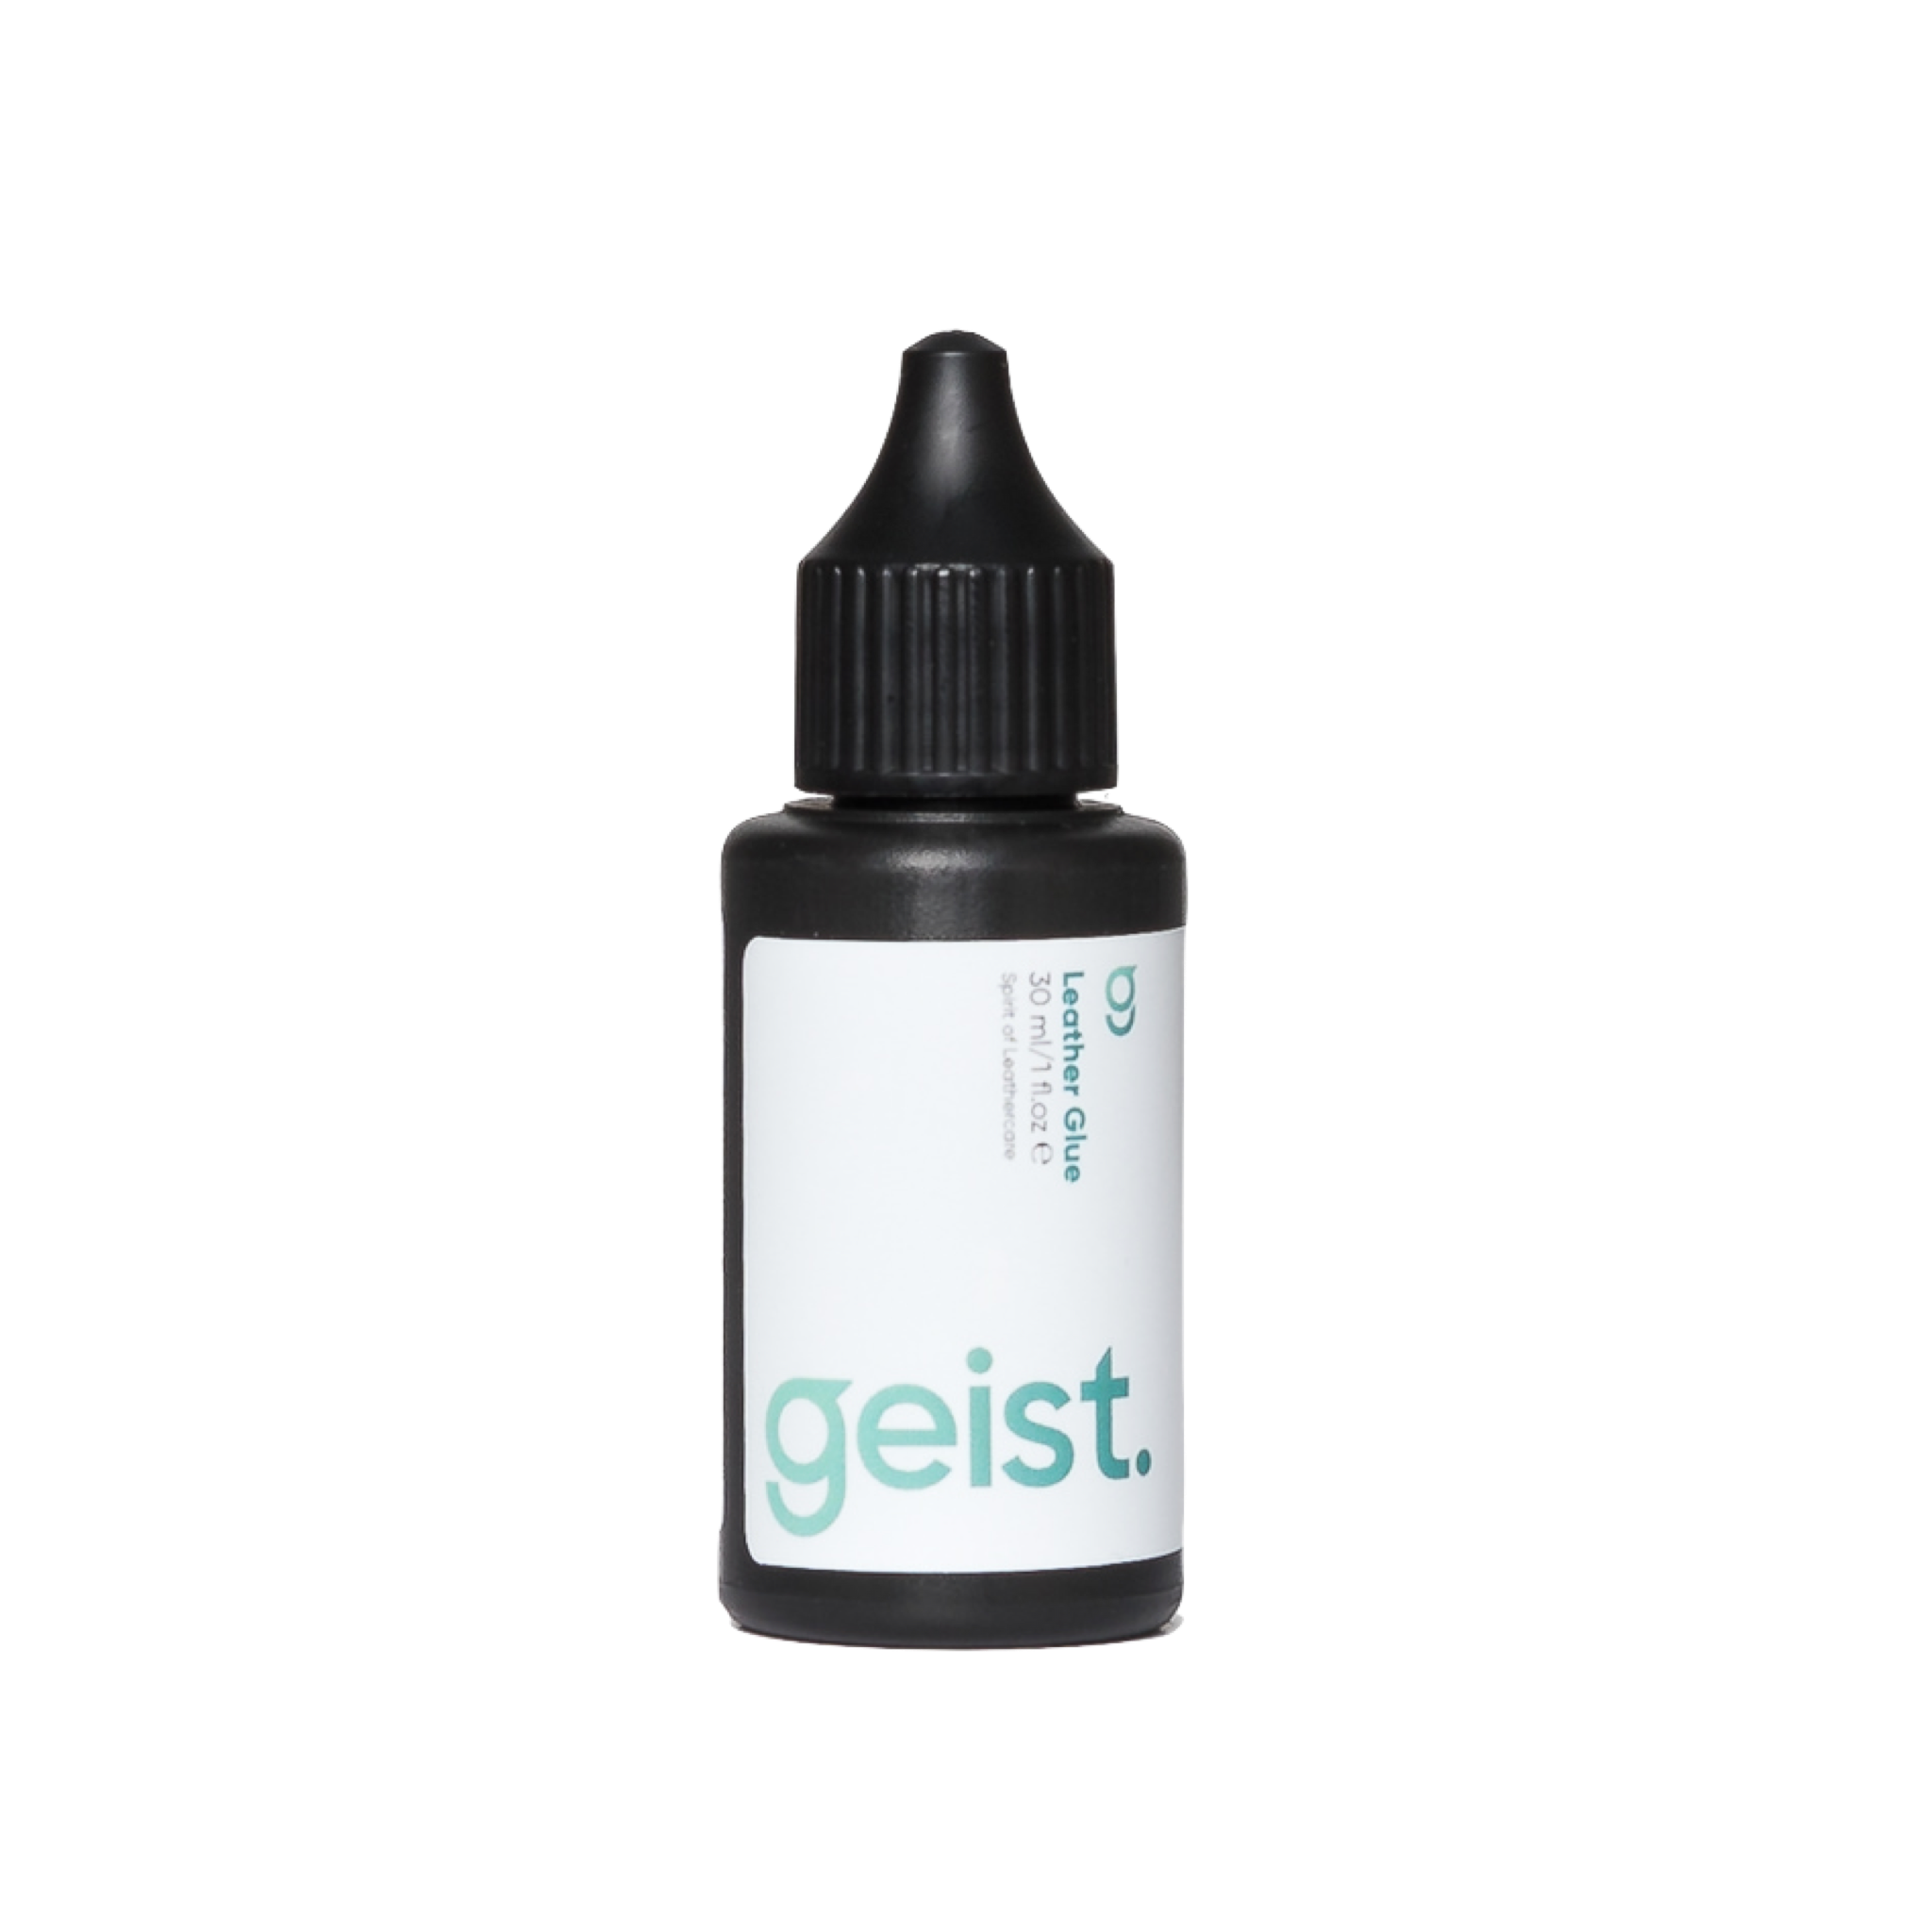 Geist. Leather Glue, 30 ml / 1 fl.oz